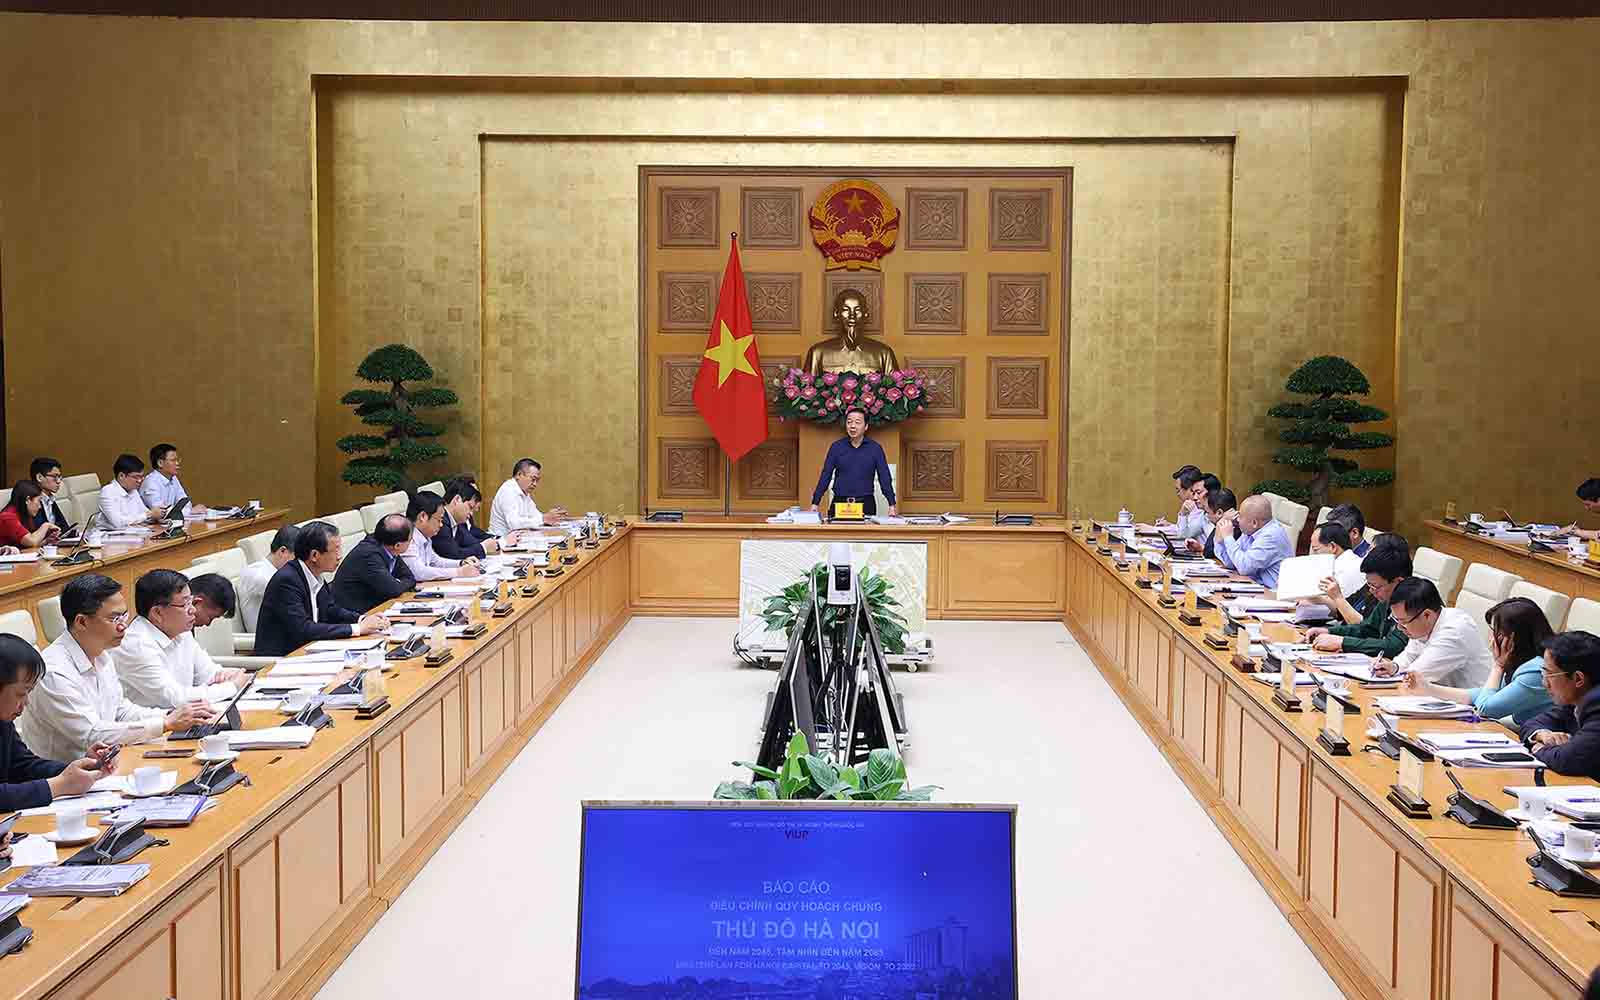 واستمع الاجتماع إلى التقرير الخاص بتعديل التخطيط العام لعاصمة هانوي. الصورة: في جي بي